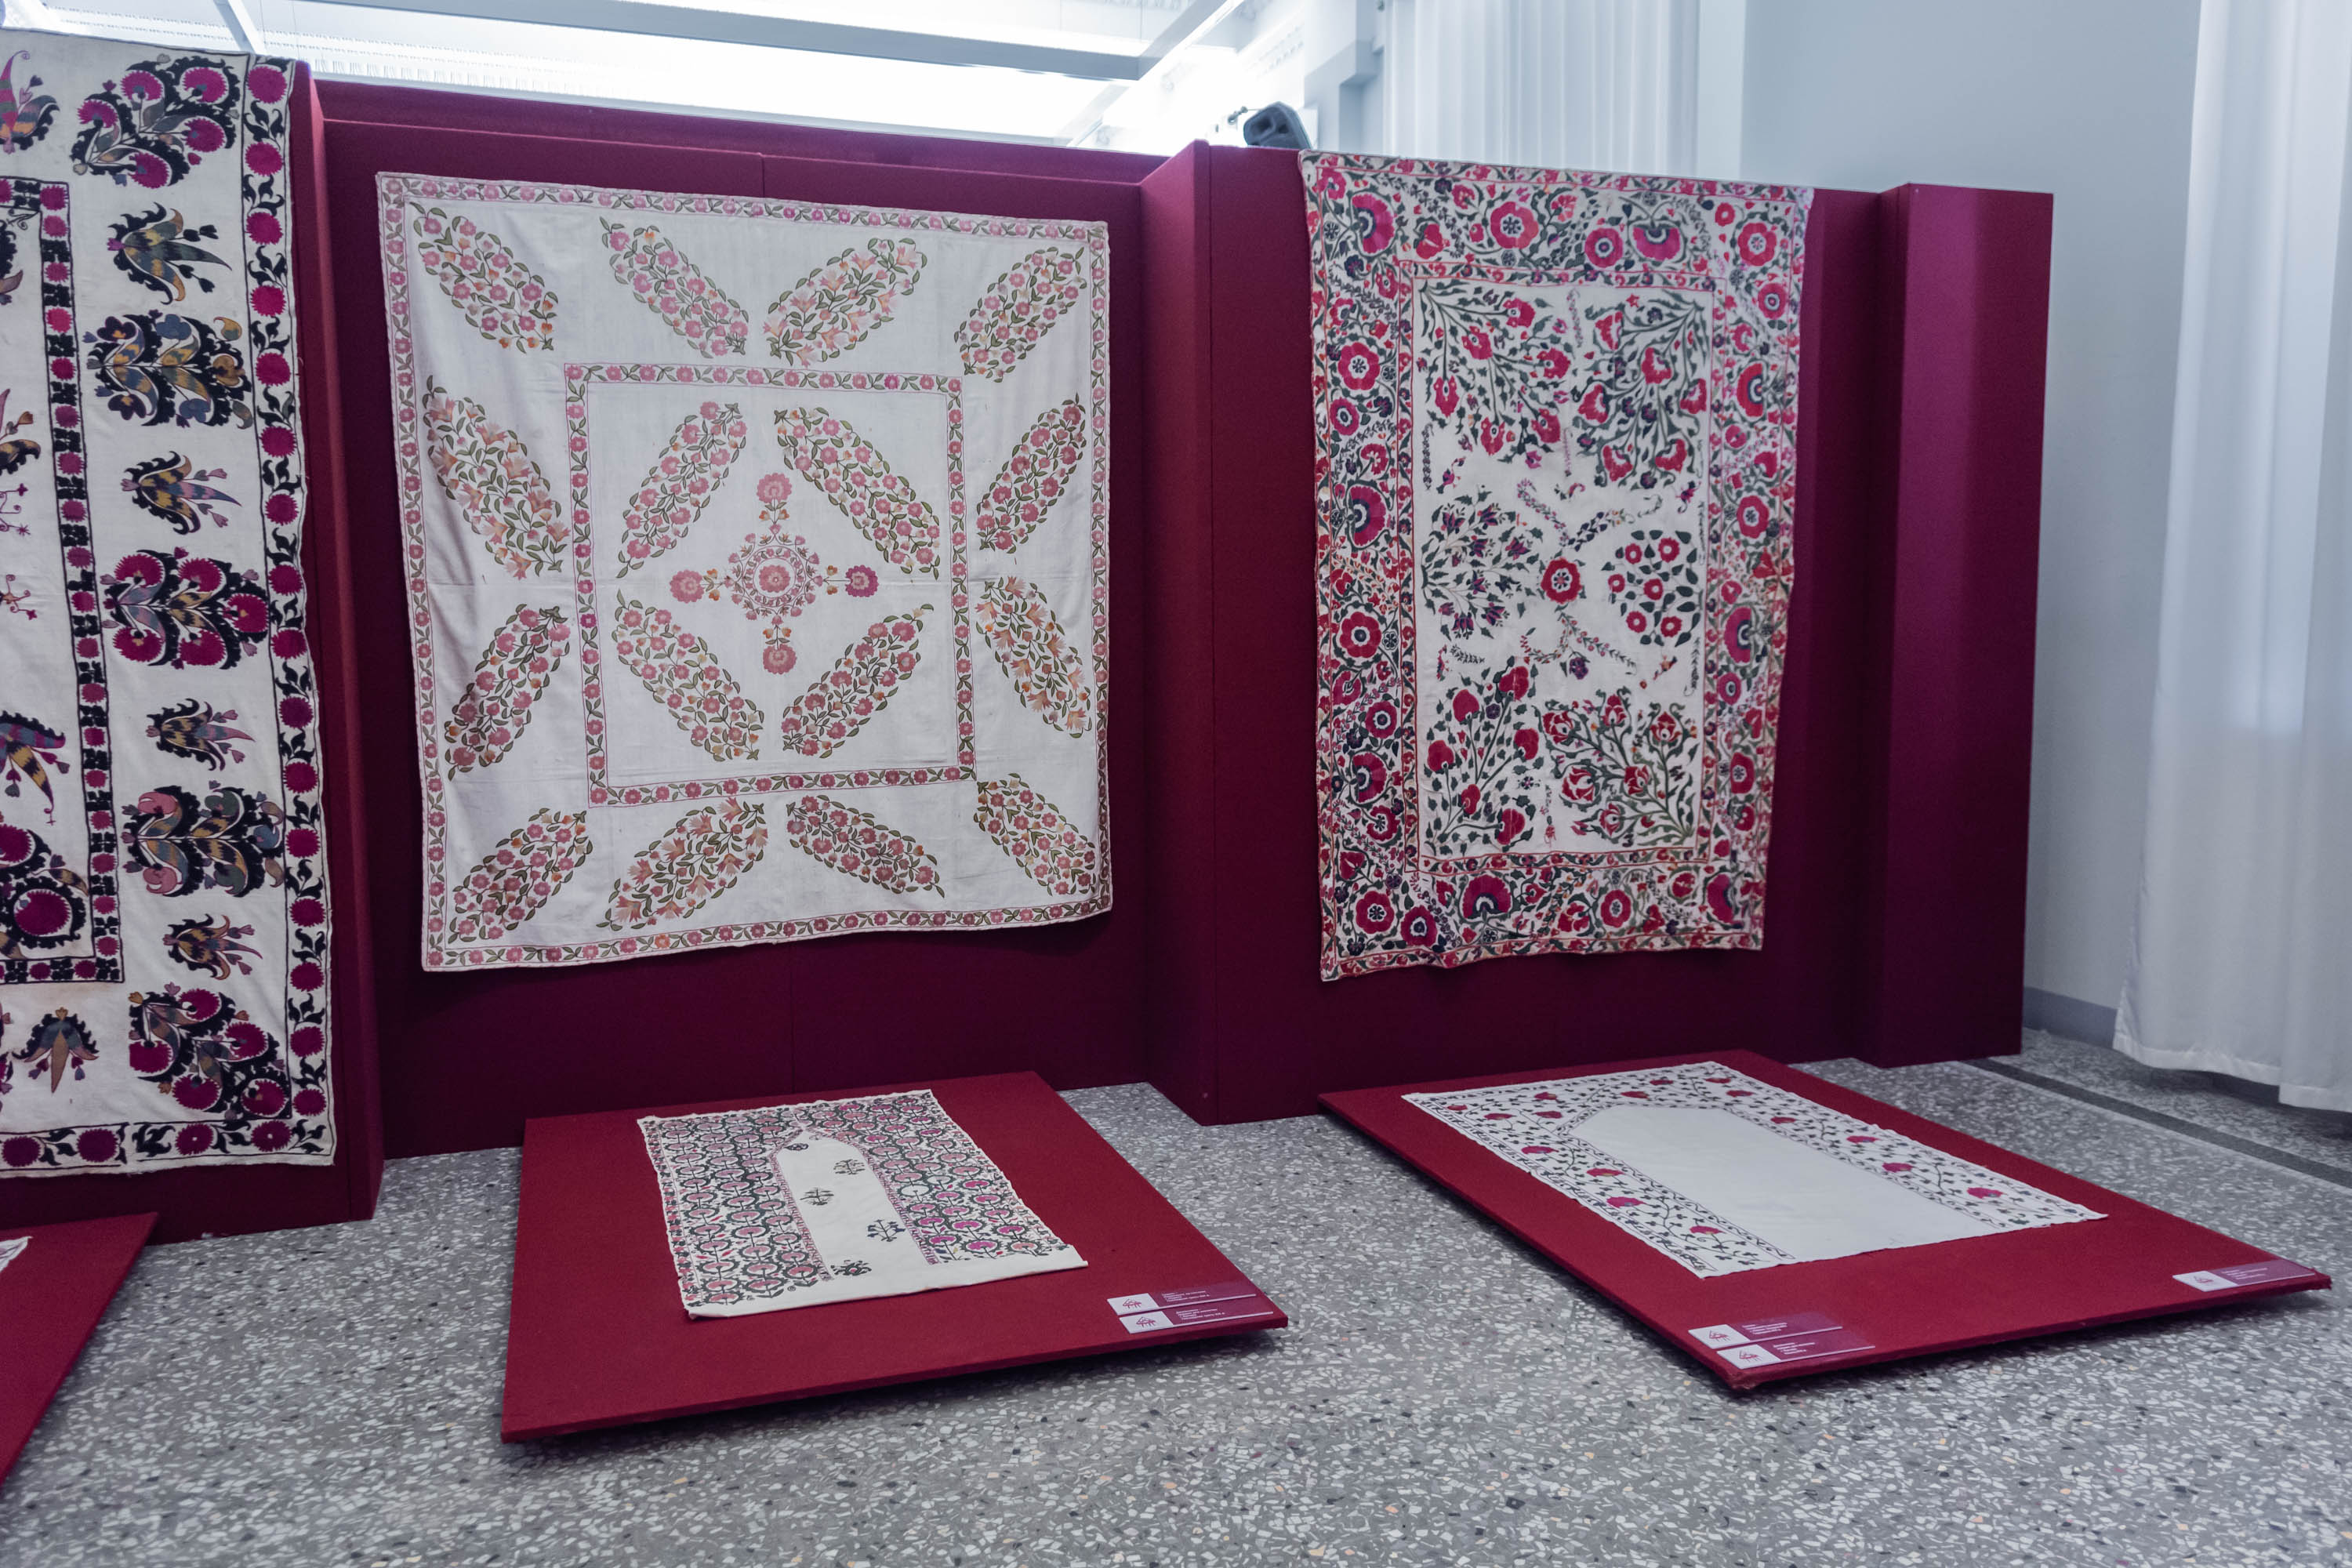 Шелковые нити Узбекистана — традиционные вышивки и ткани11